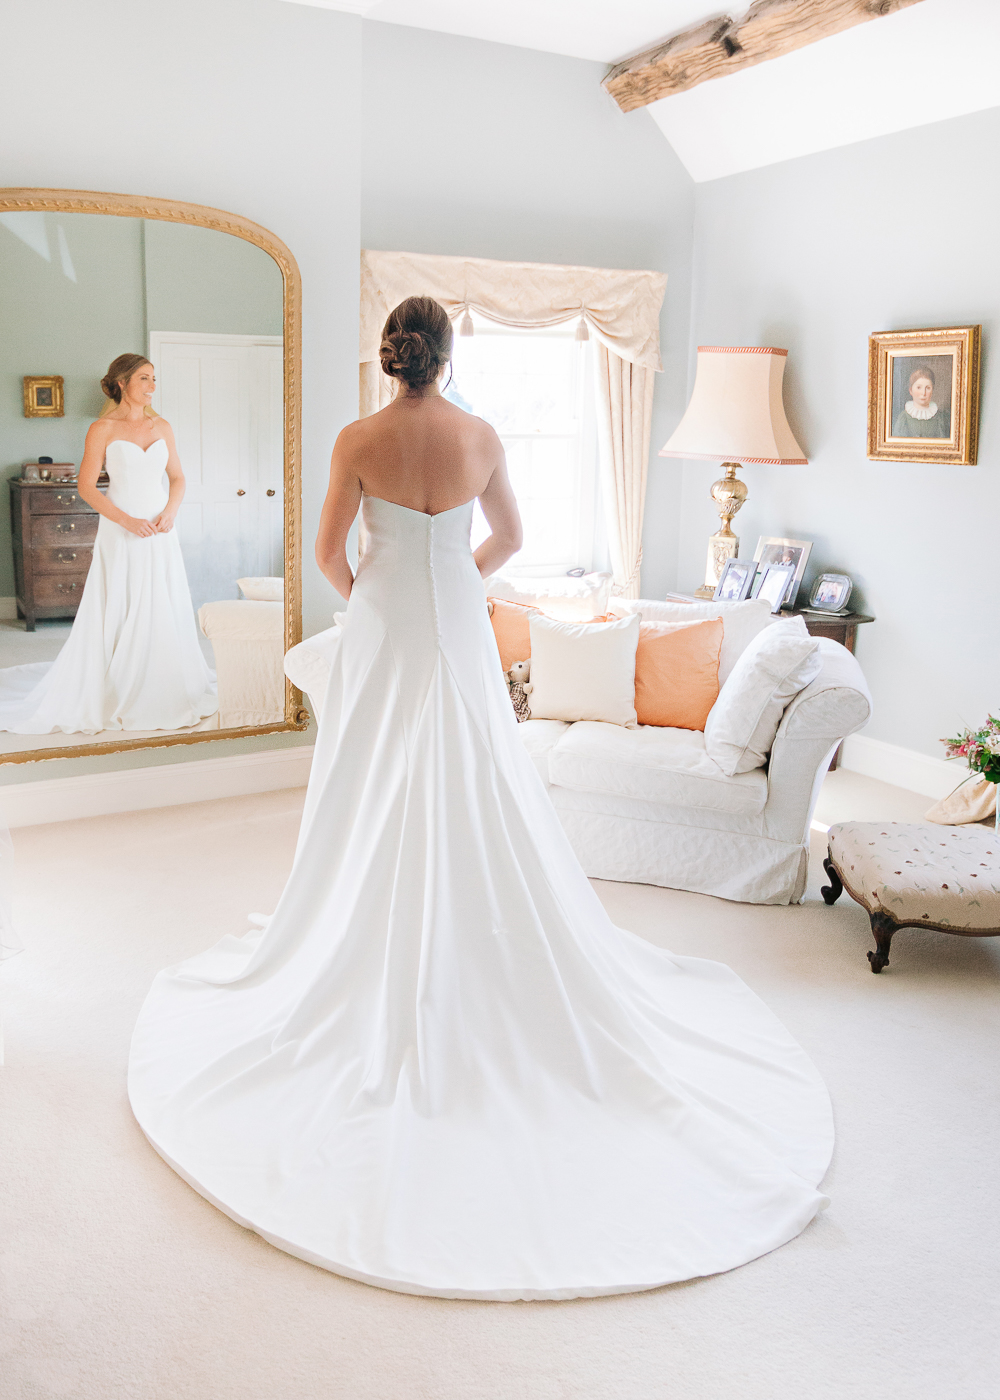 Bride standing in window light in Manor house wedding suite